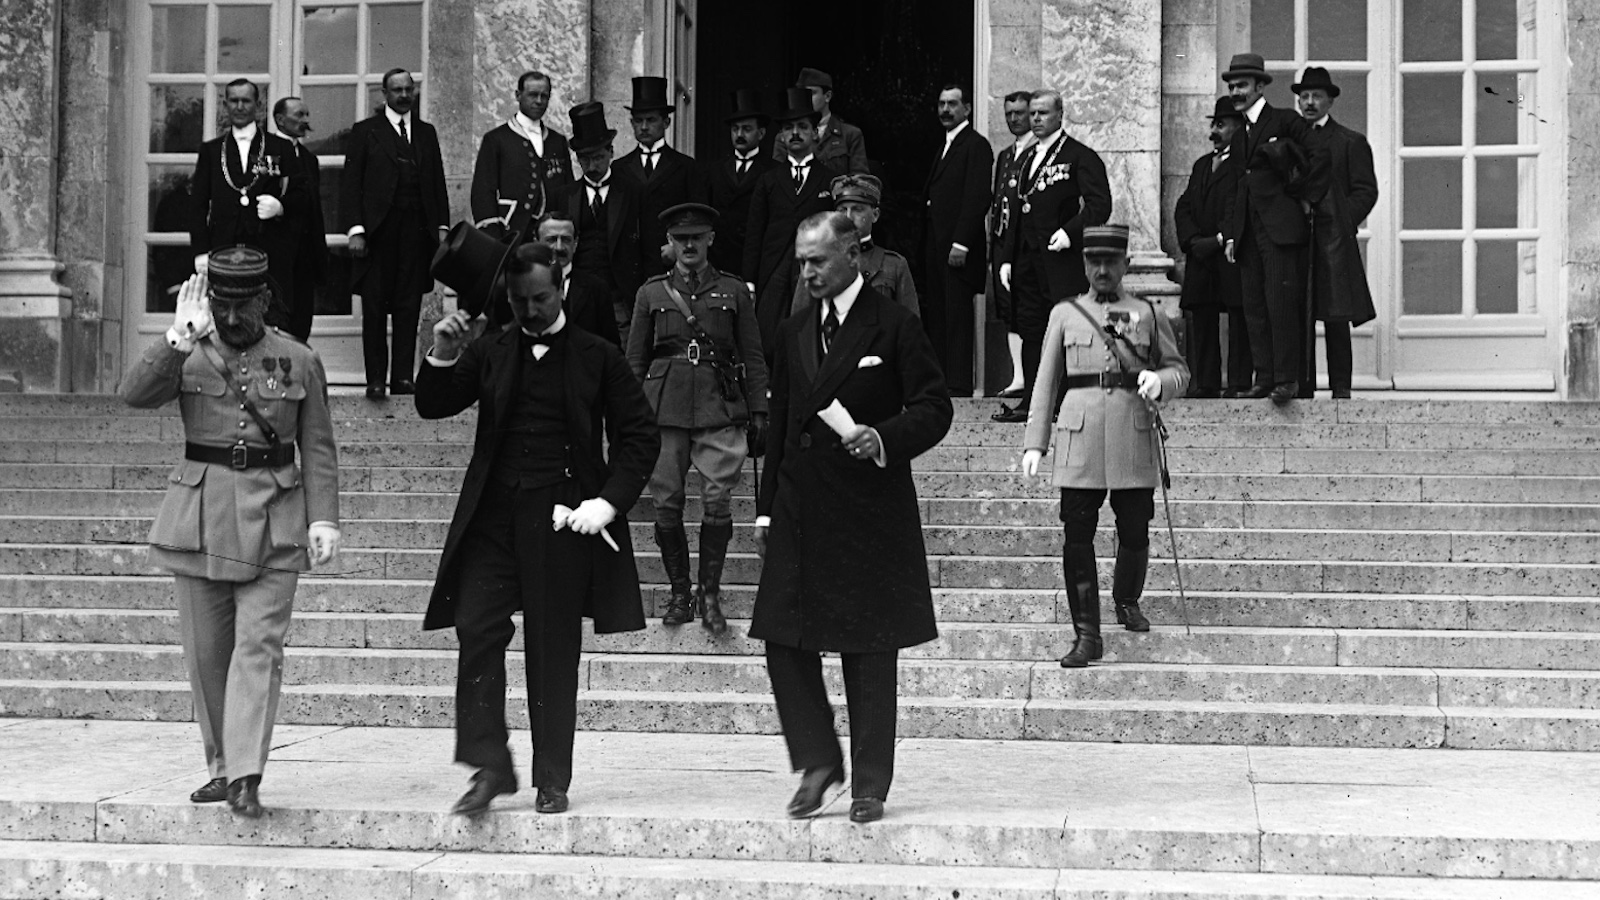 A cikk nyitóképe: A magyar delegáció elhagyja a Nagy-Trianon-palotát a békeszerződés aláírása után l Fotó: Válasz Online/Francia Nemzeti Könyvtár